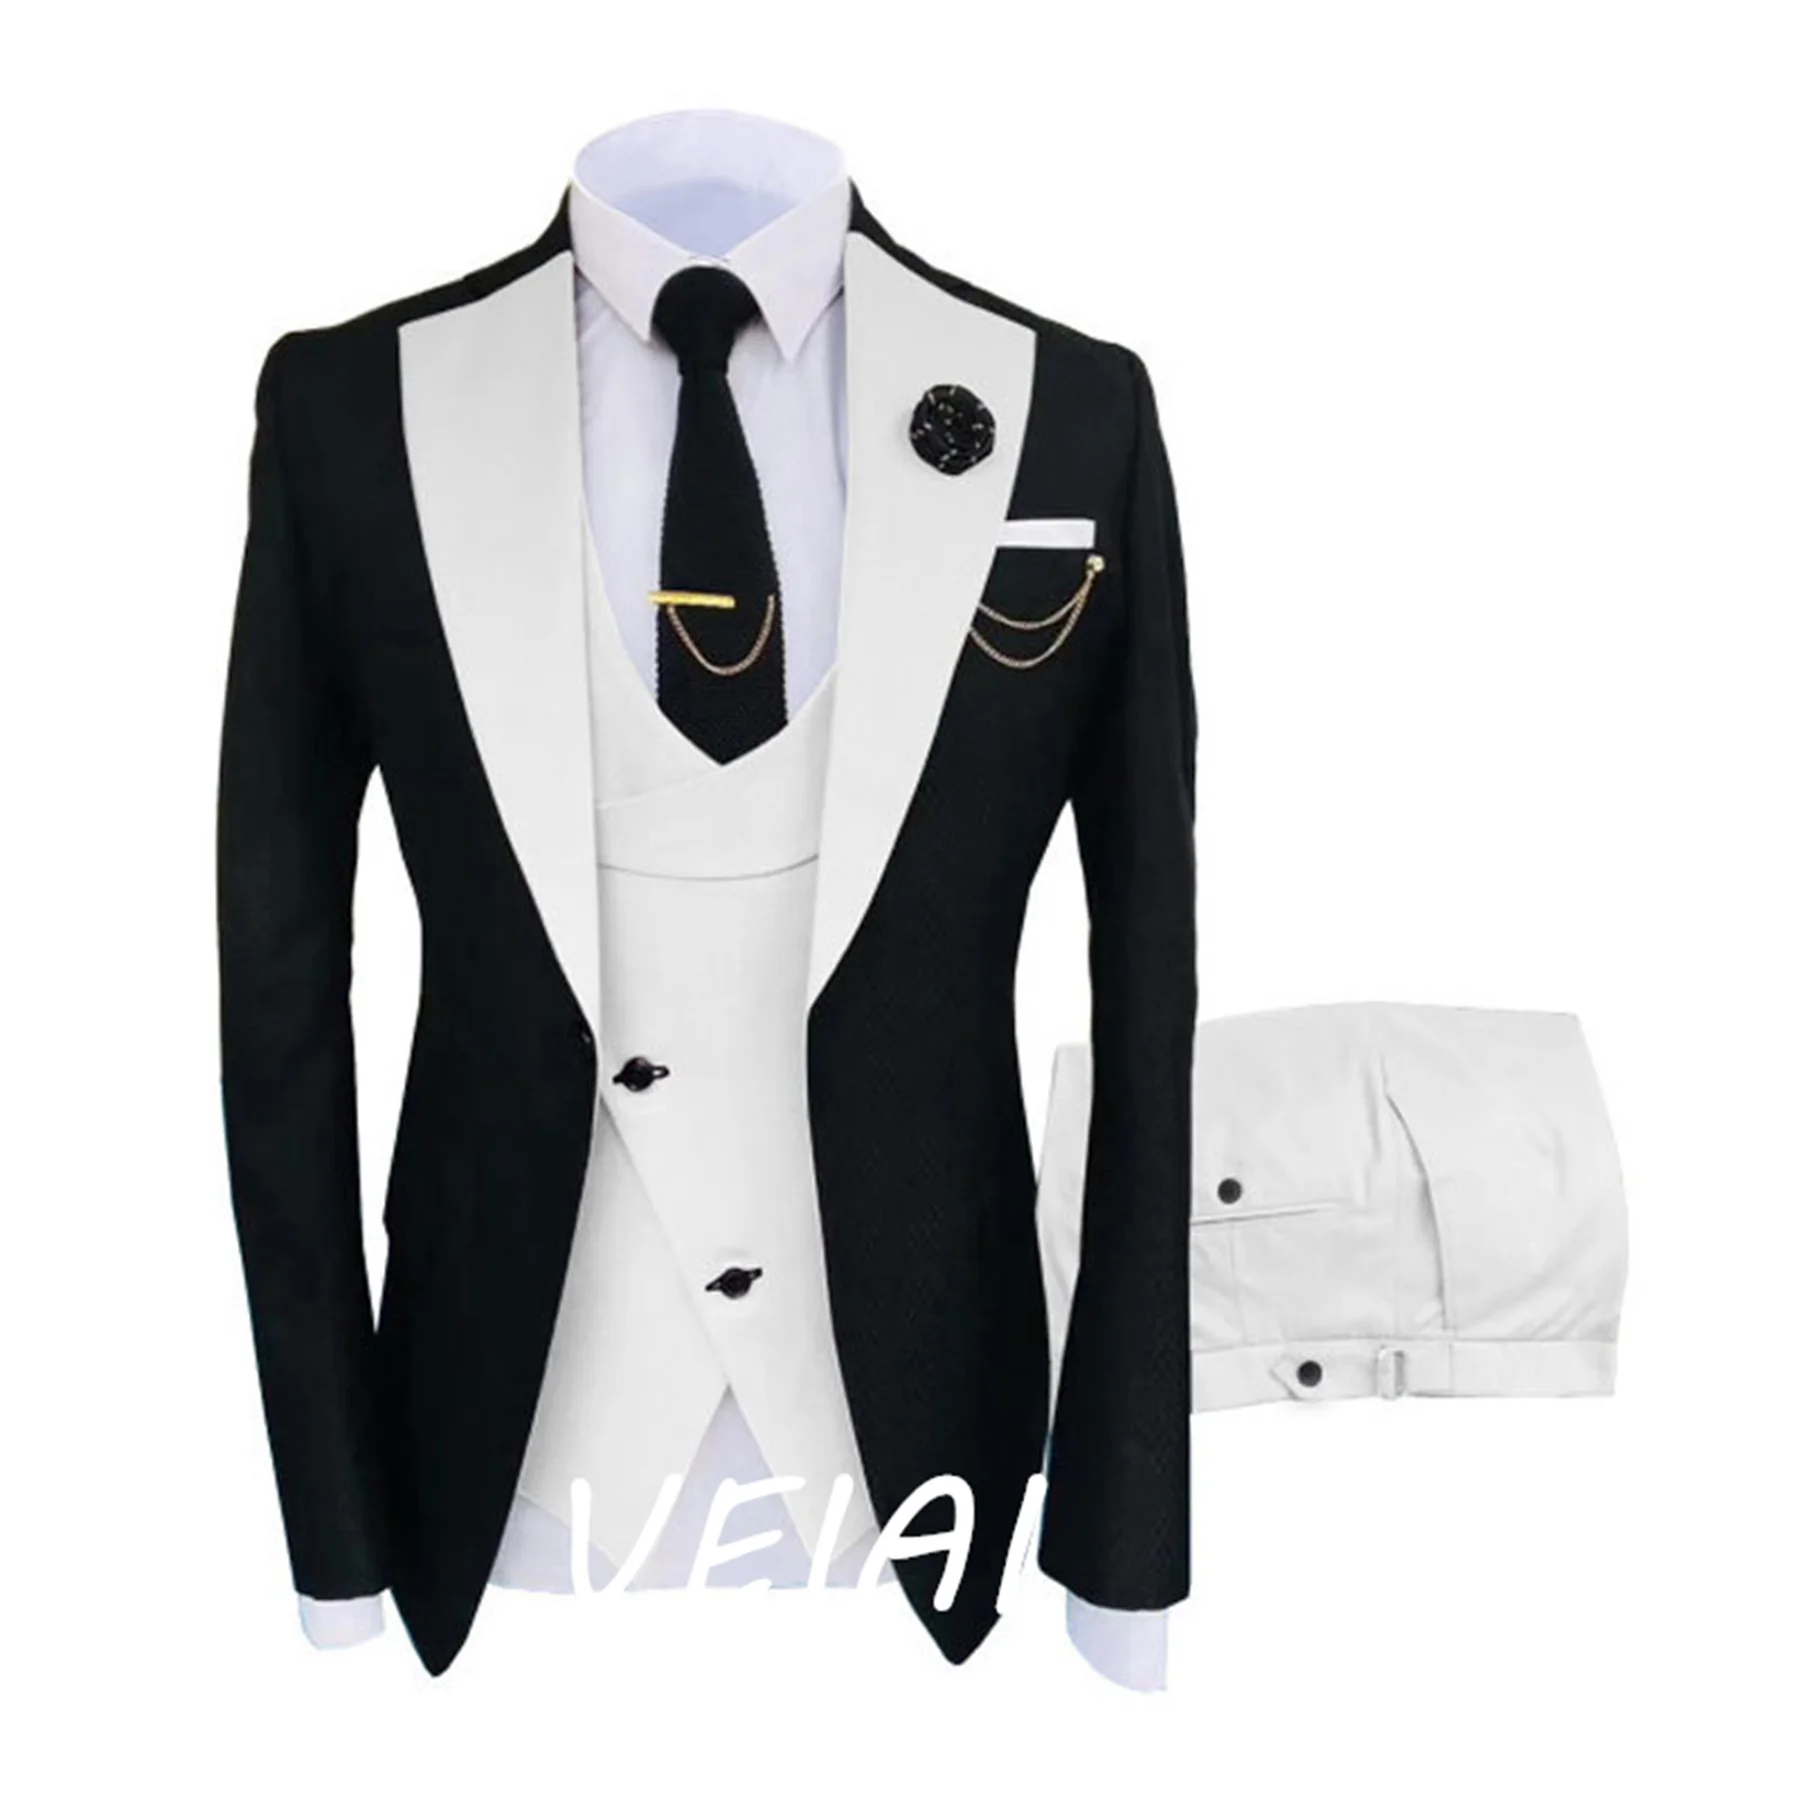 Новый мужской костюм-тройка Корейской версии, приталенная модель, одежда для проведения деловых банкетов, платье жениха, свадебное платье жениха Изображение 0